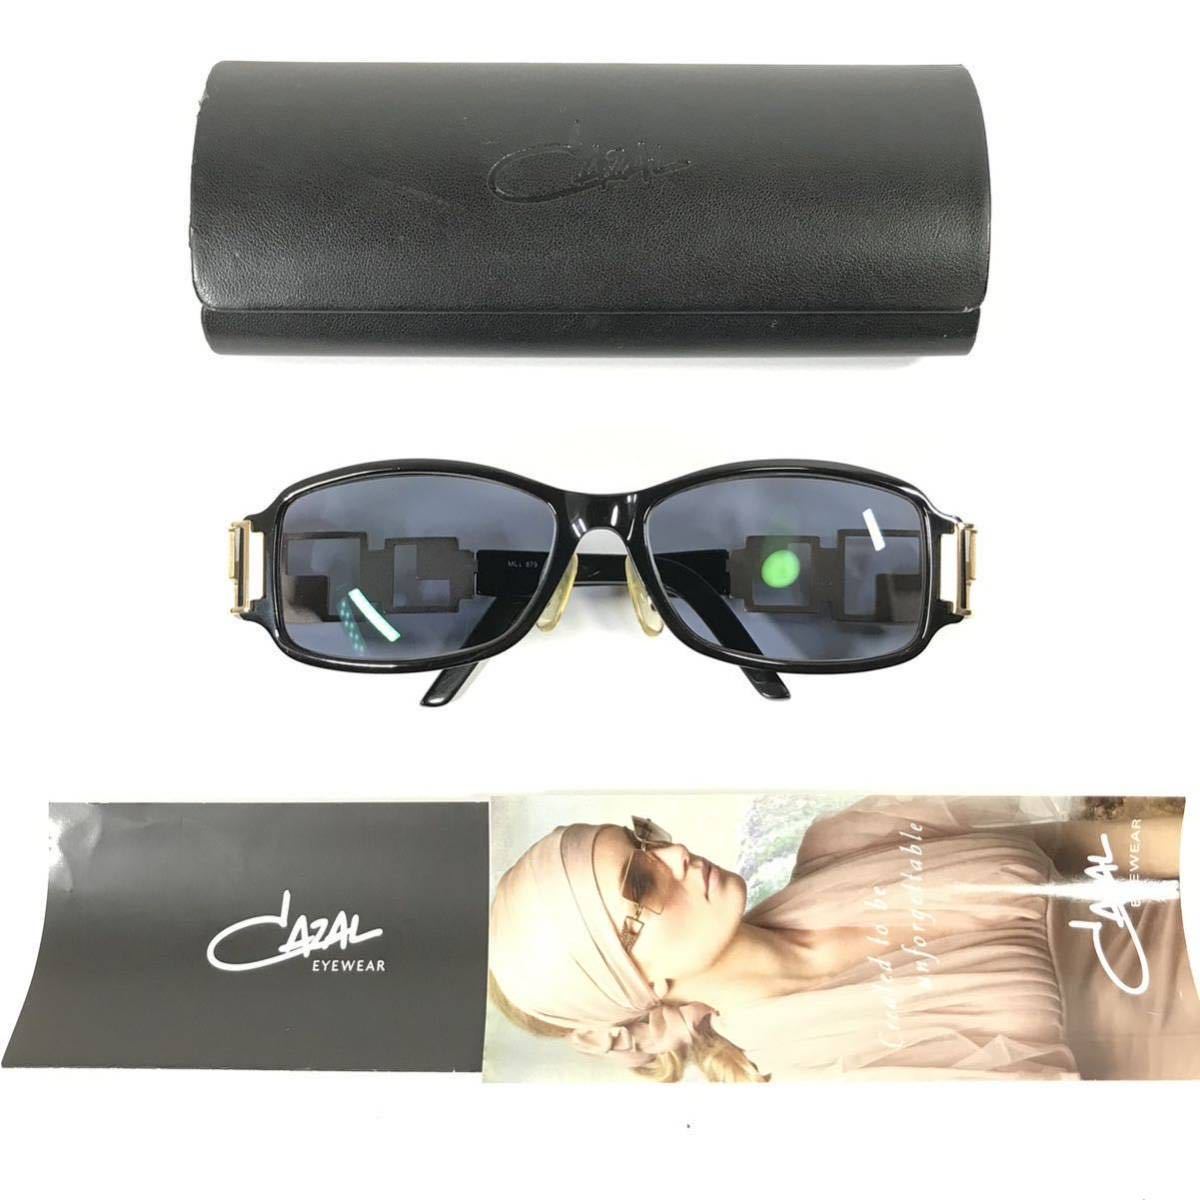 【カザール】本物 CAZAL サングラス MOD 879 黒色系 度入り サングラス メガネ めがね メンズ レディース ドイツ製 ケース付き 送料520円